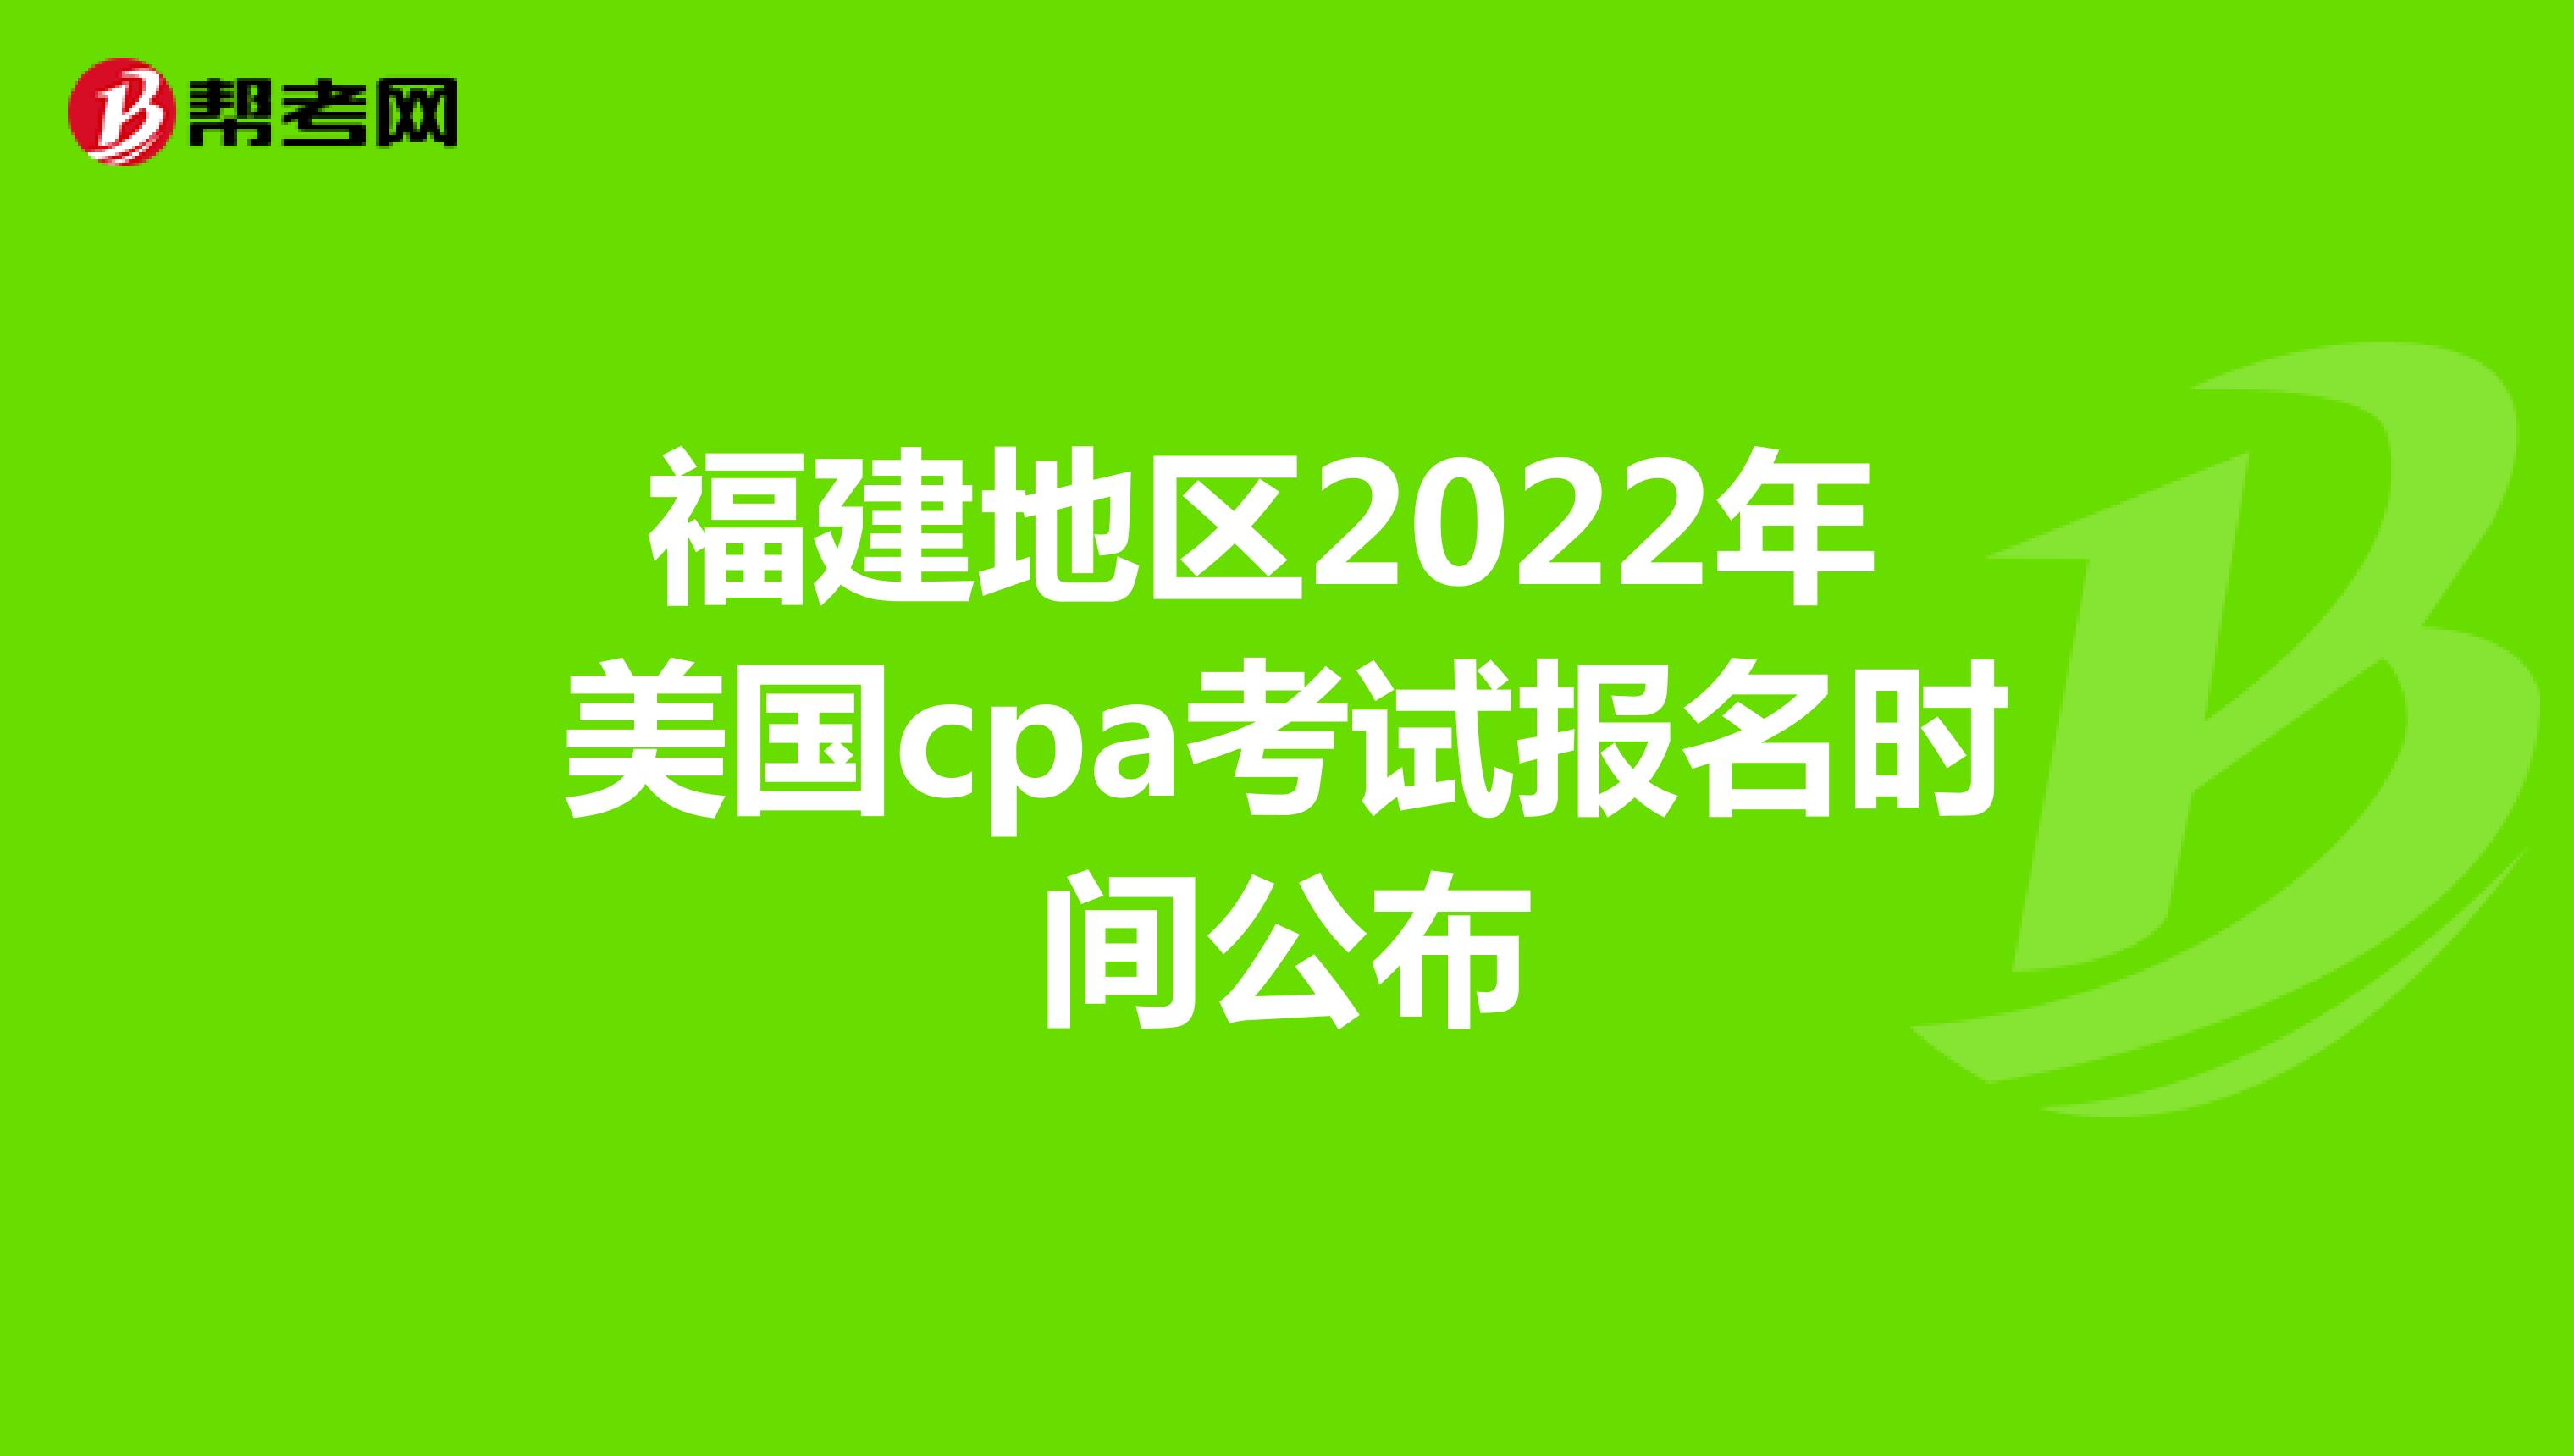 福建地区2022年美国cpa考试报名时间公布